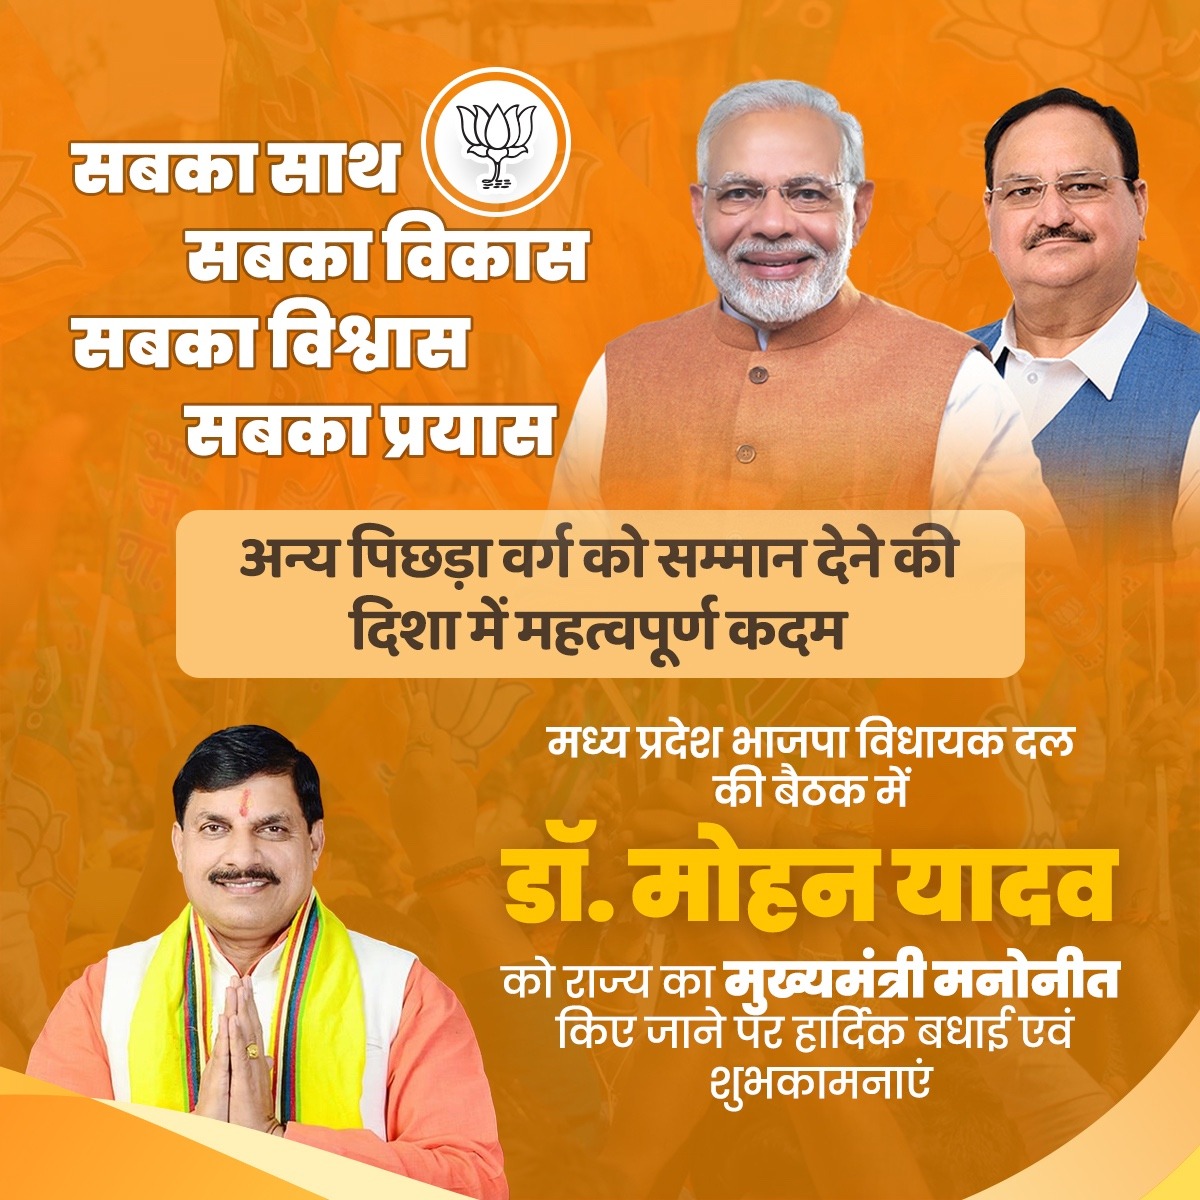 मध्य प्रदेश भारतीय जनता पार्टी विधायक दल की बैठक में माननीय श्री (डॉ.) मोहन यादव जी राज्य का मुख्यमंत्री मनोनीत किए जाने पर हार्दिक बधाई एवं शुभकामनाएं। #NaMoAgain #MadhyaPradeshCM #BJPGovernment